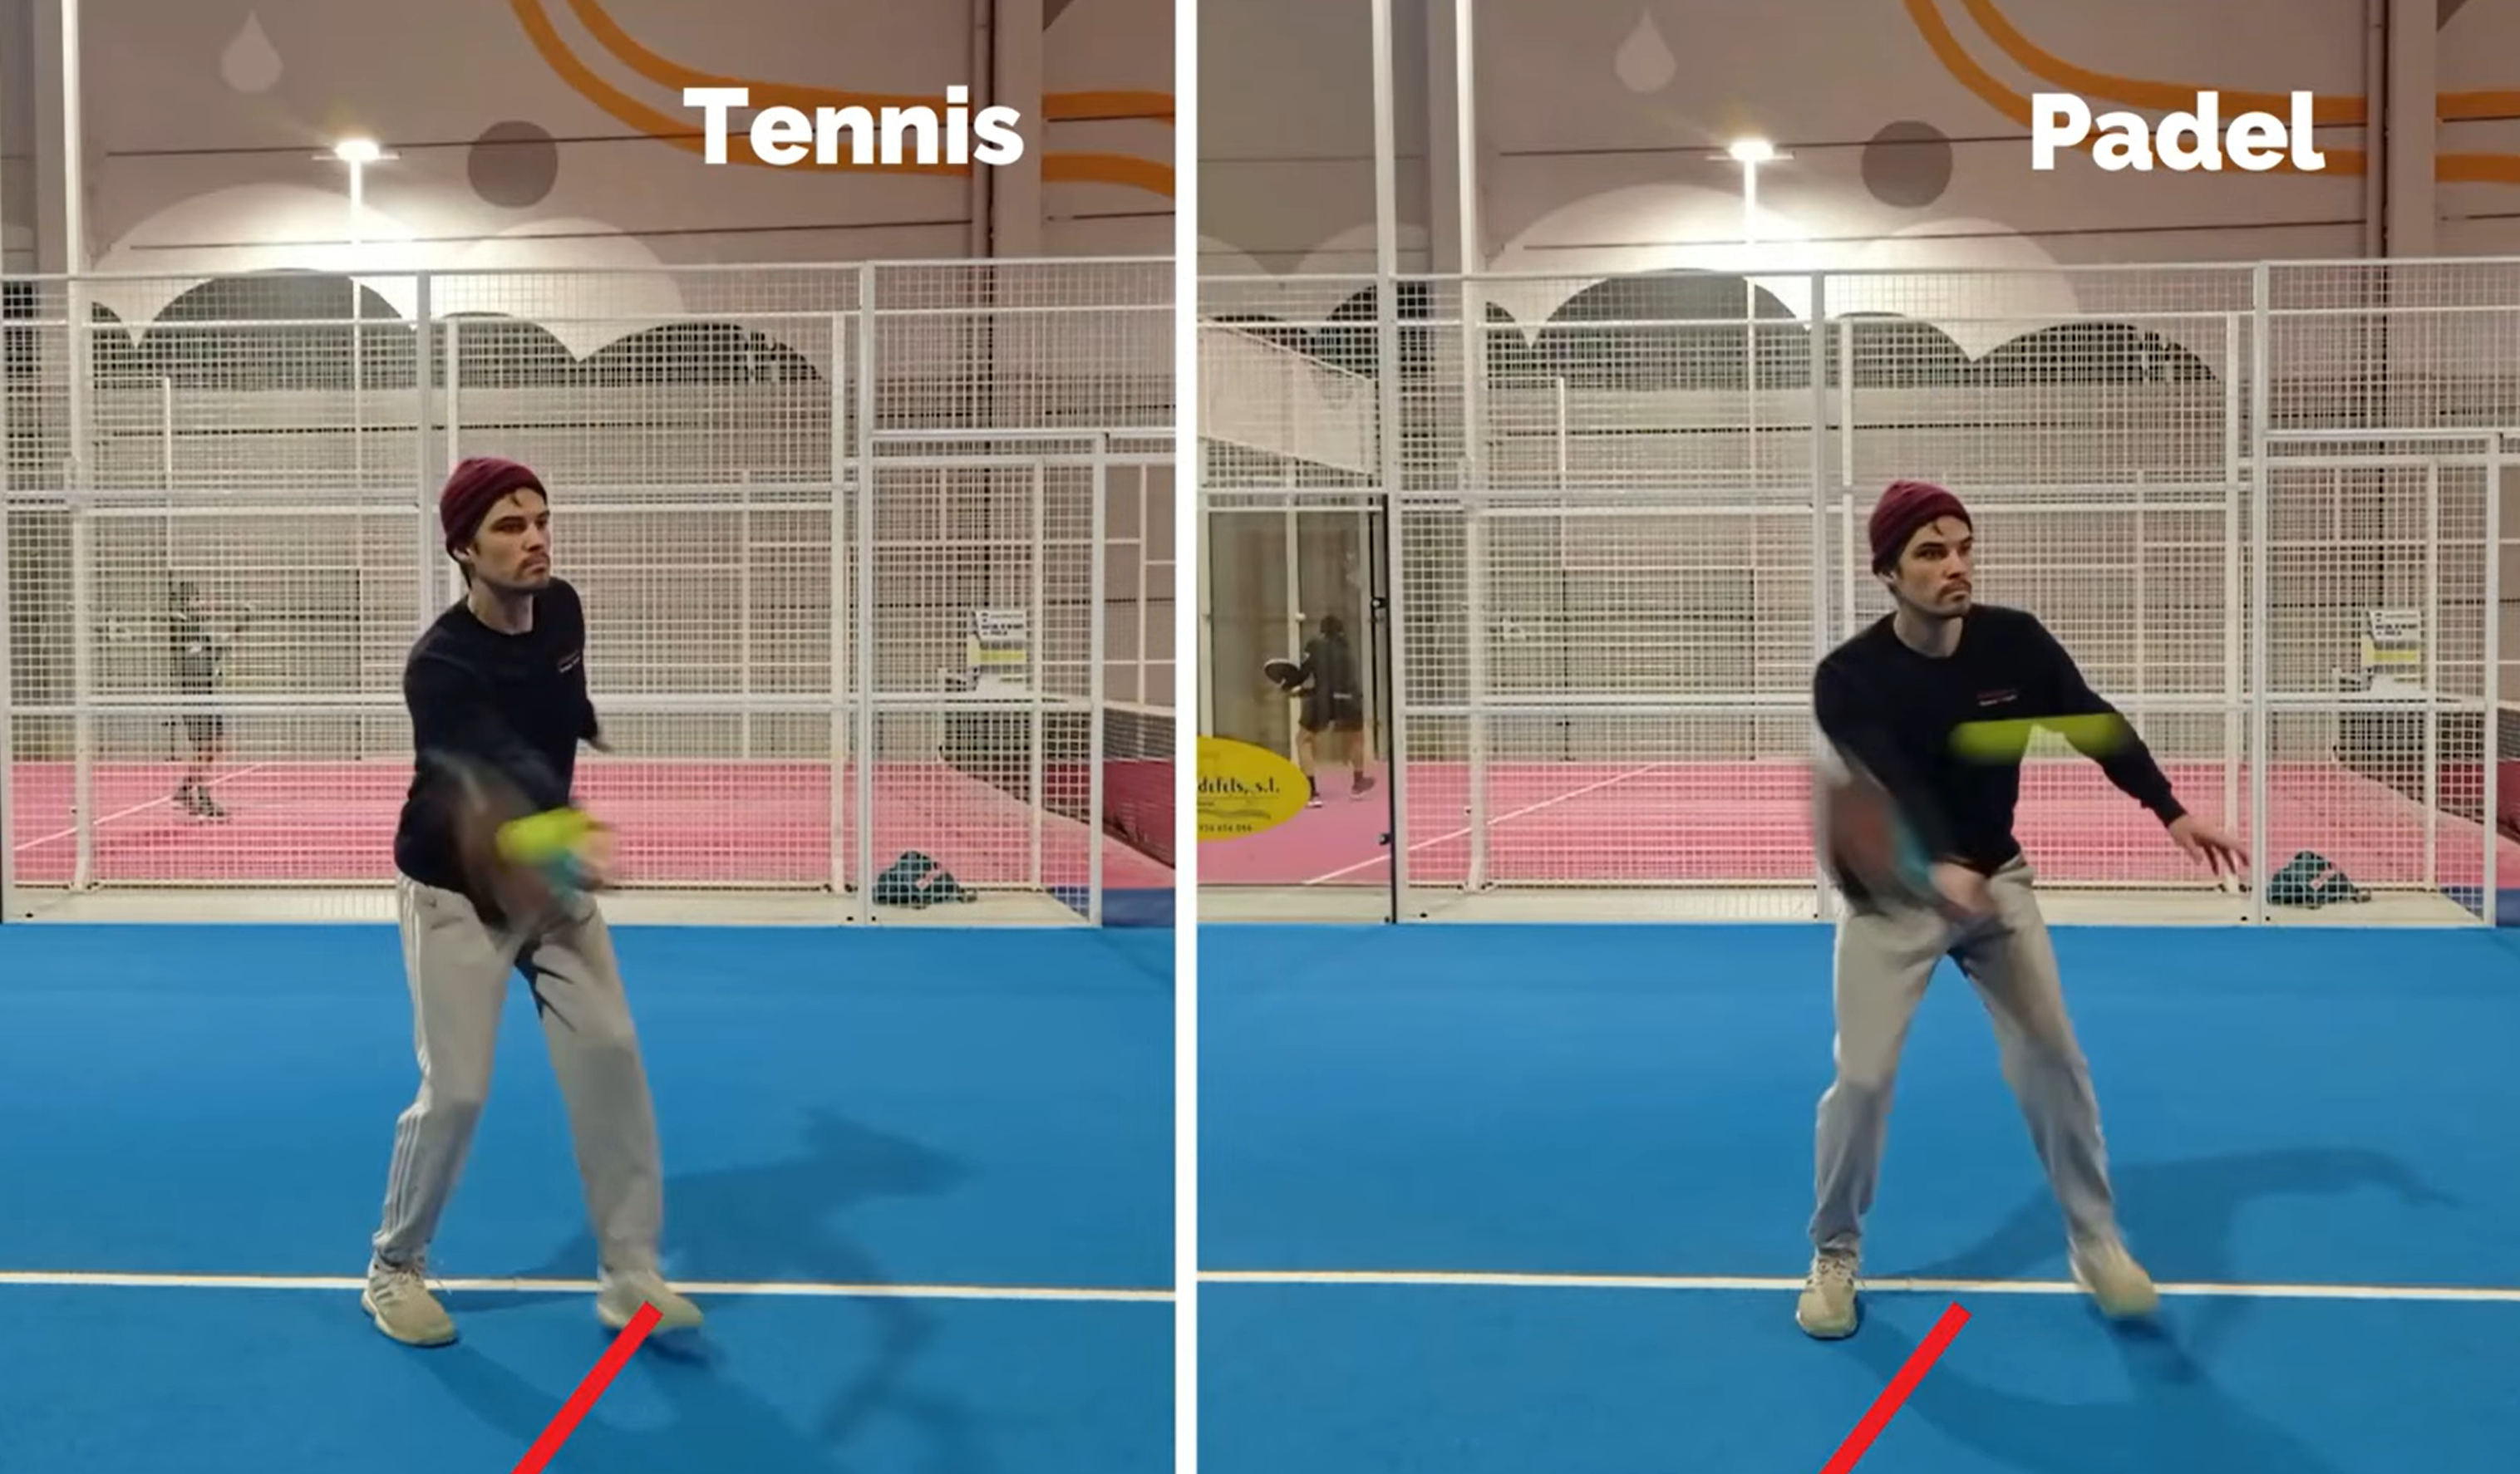 3 różnice między siatkówką tenisową a siatkówką padel